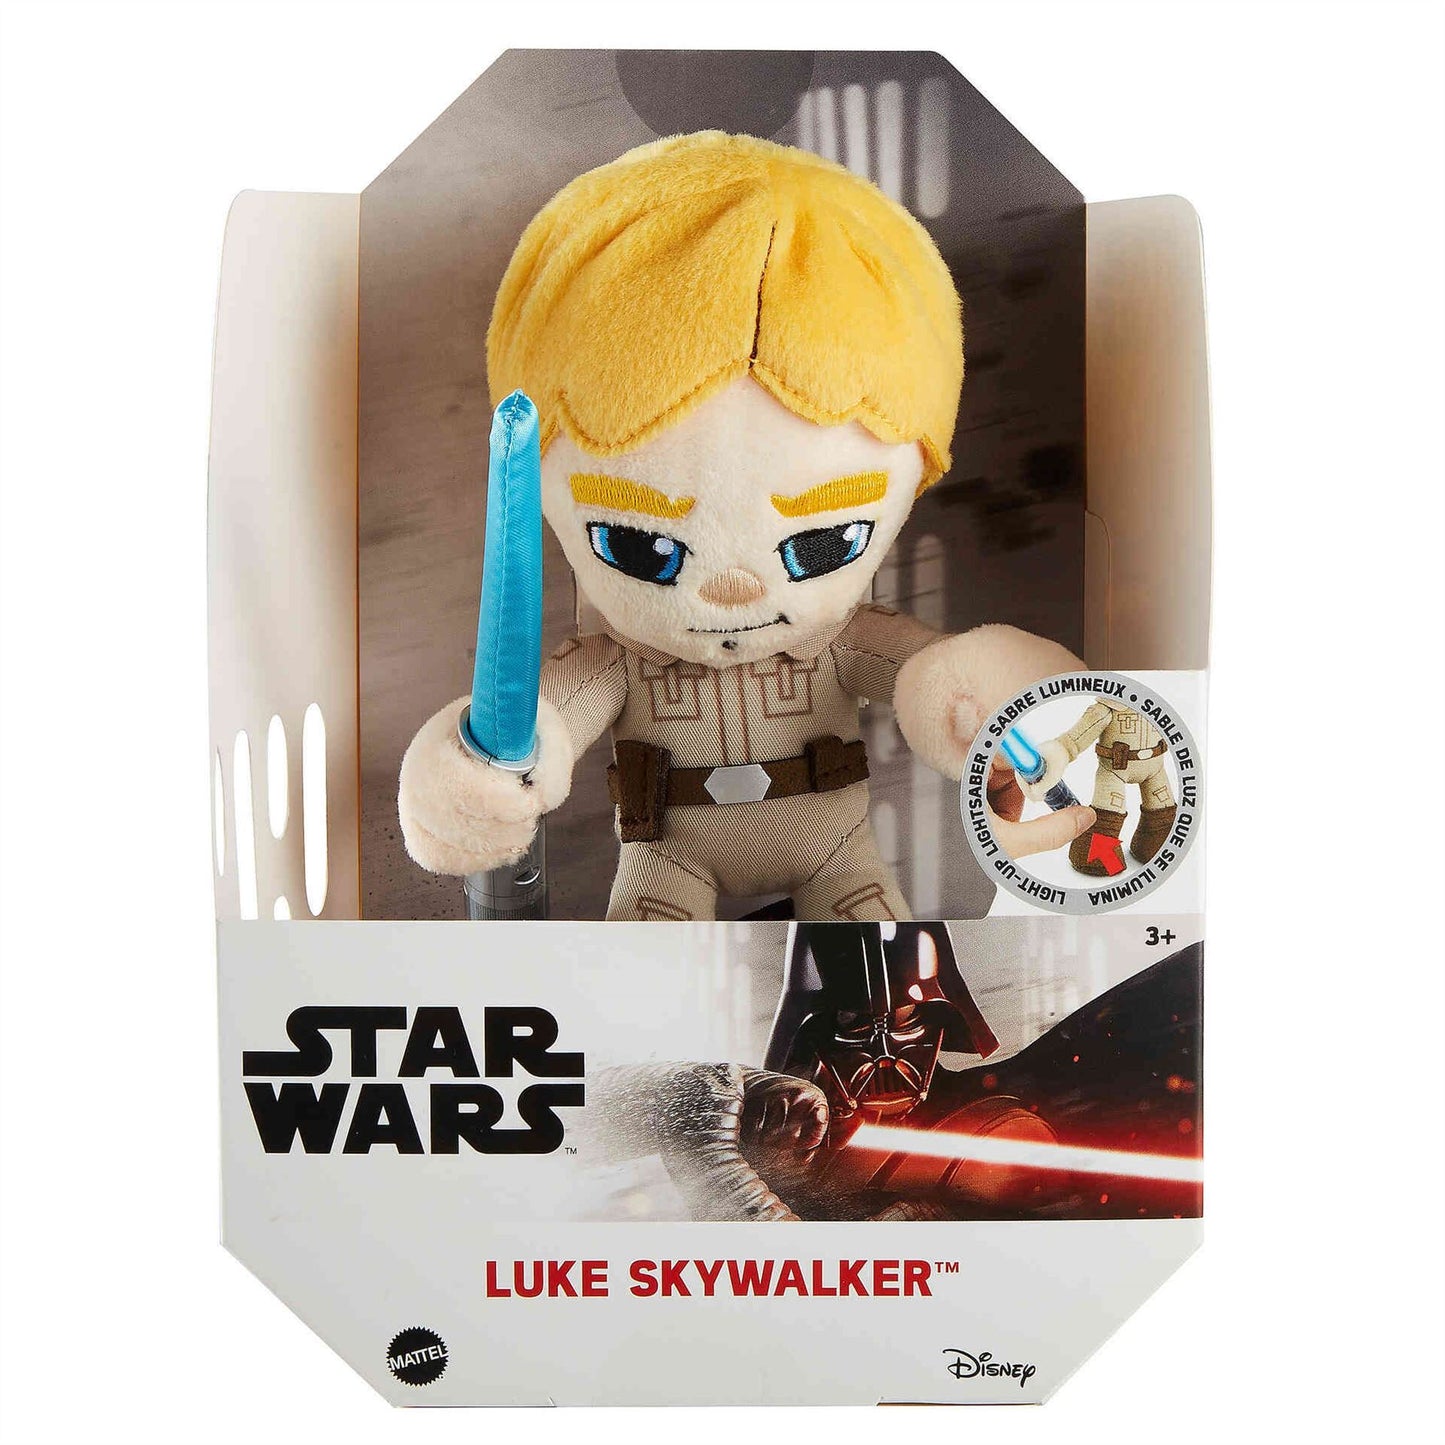 Star Wars LUKE SKYWALKER 6" Light Up Plush Disney Mattel GXB32